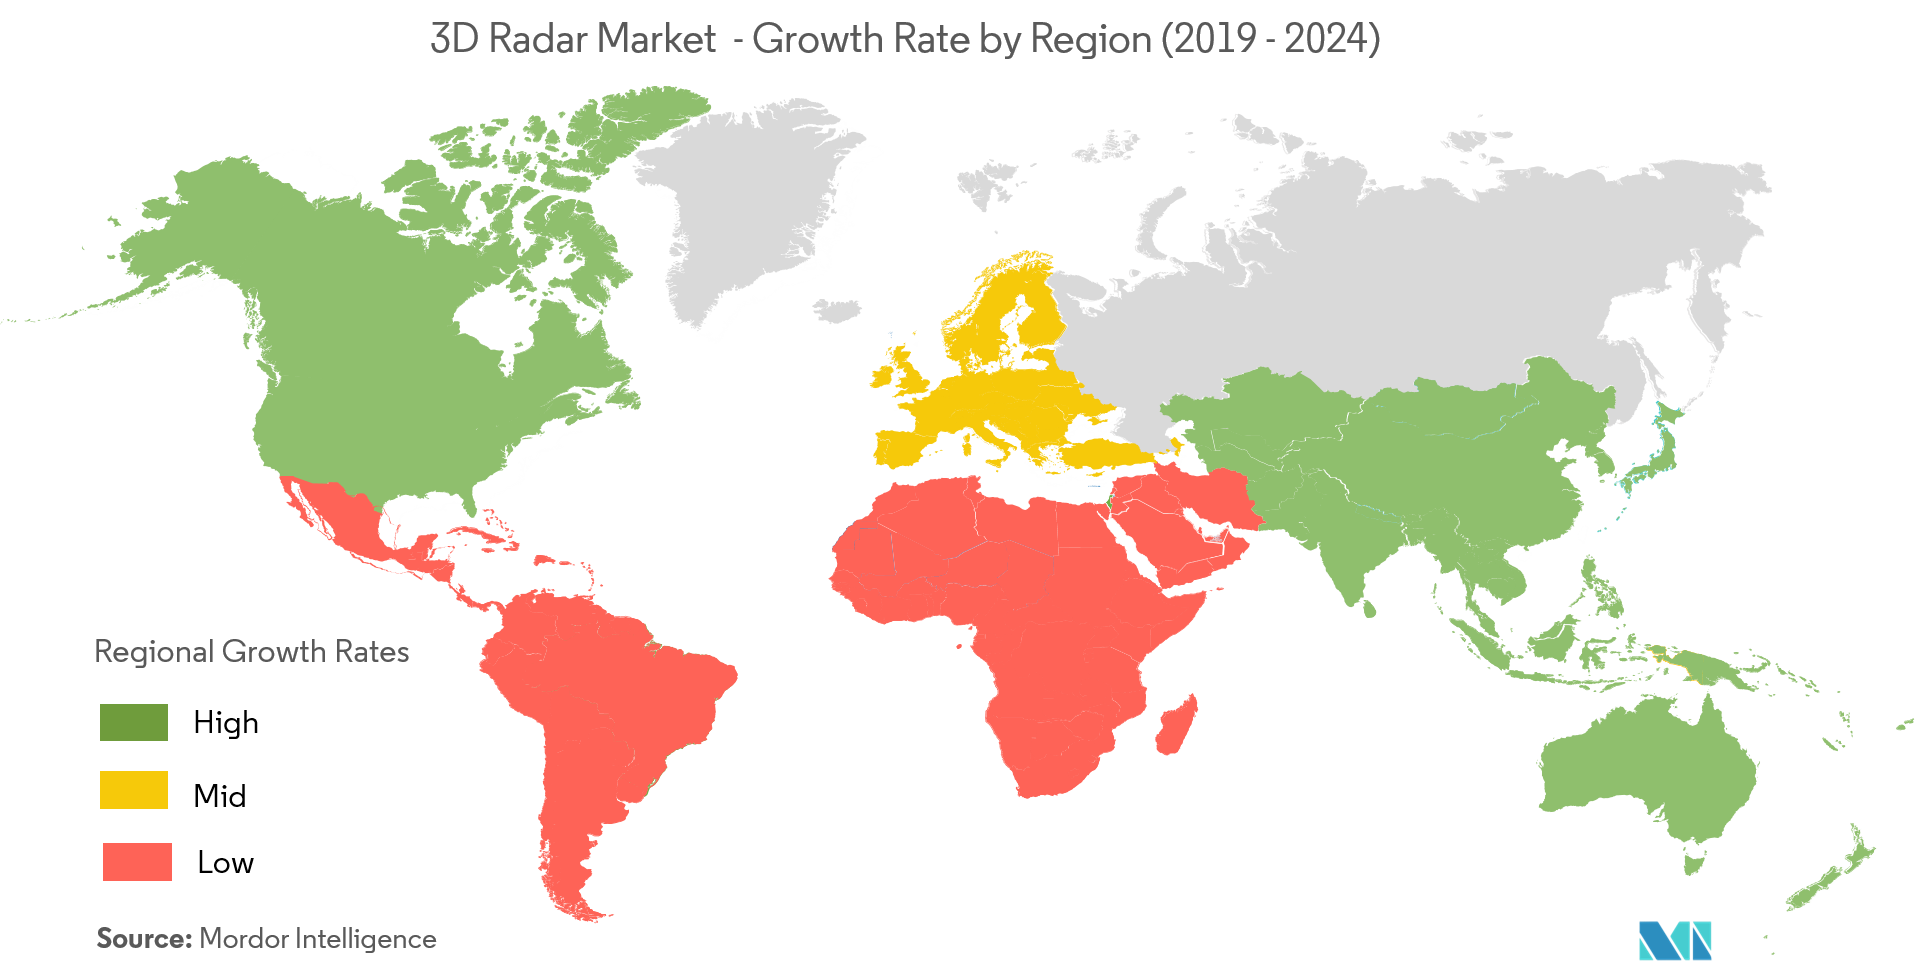  Marché des radars 3D - Taux de croissance par région ( 2019 - 2024 )